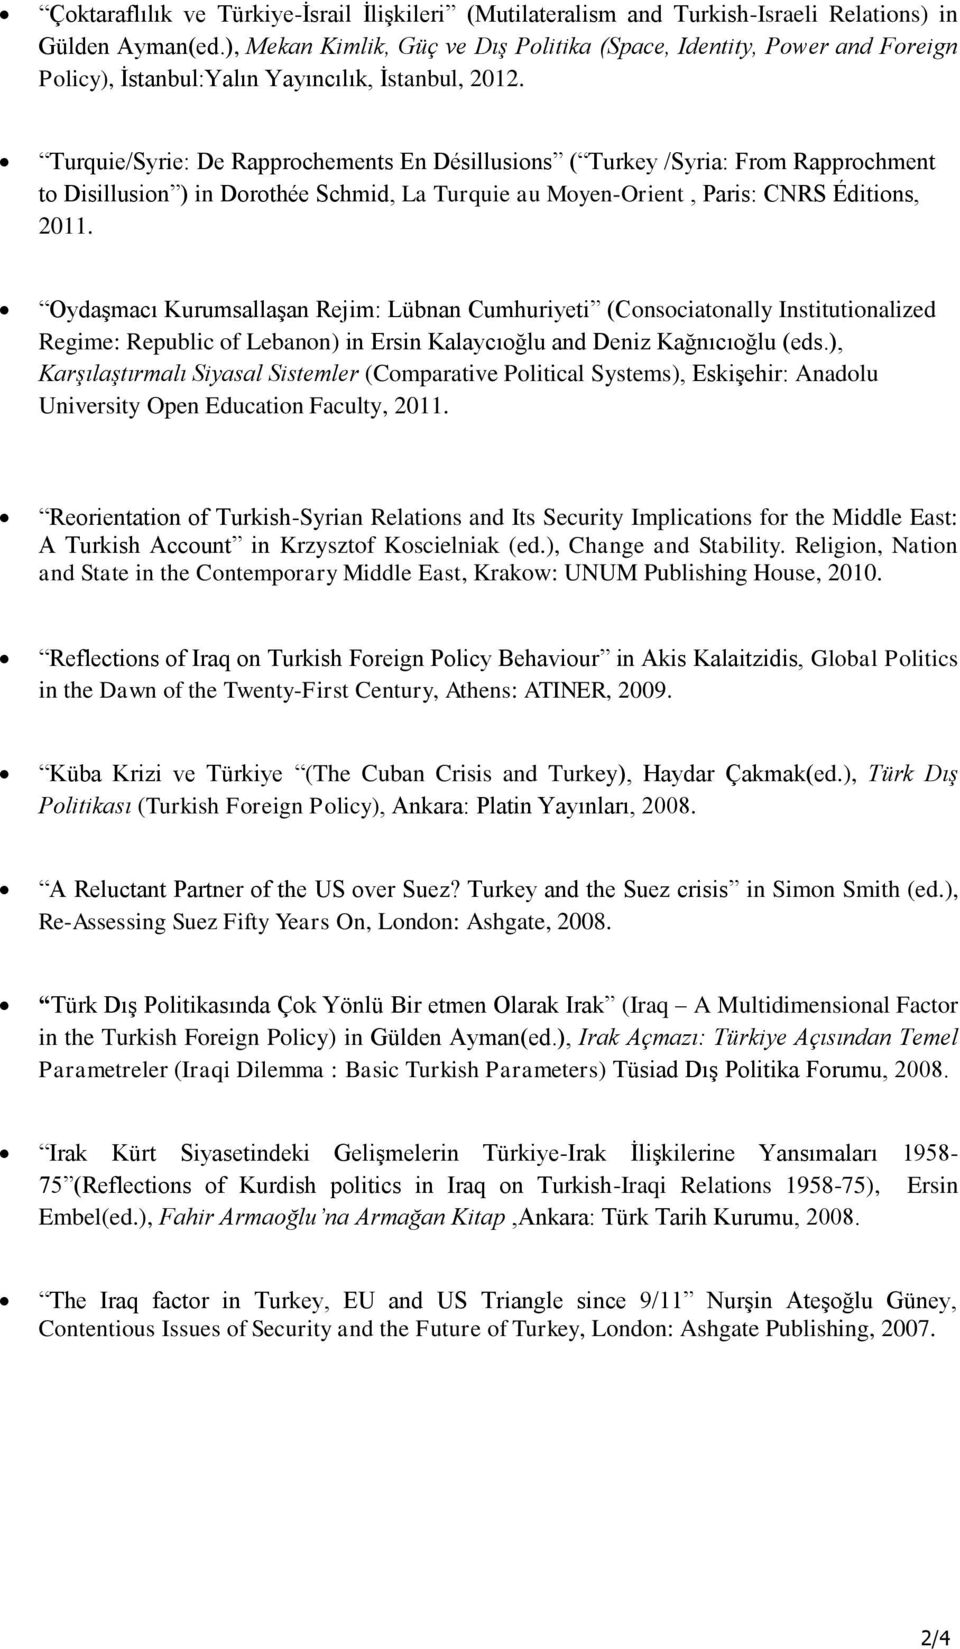 Turquie/Syrie: De Rapprochements En Désillusions ( Turkey /Syria: From Rapprochment to Disillusion ) in Dorothée Schmid, La Turquie au Moyen-Orient, Paris: CNRS Éditions, 2011.